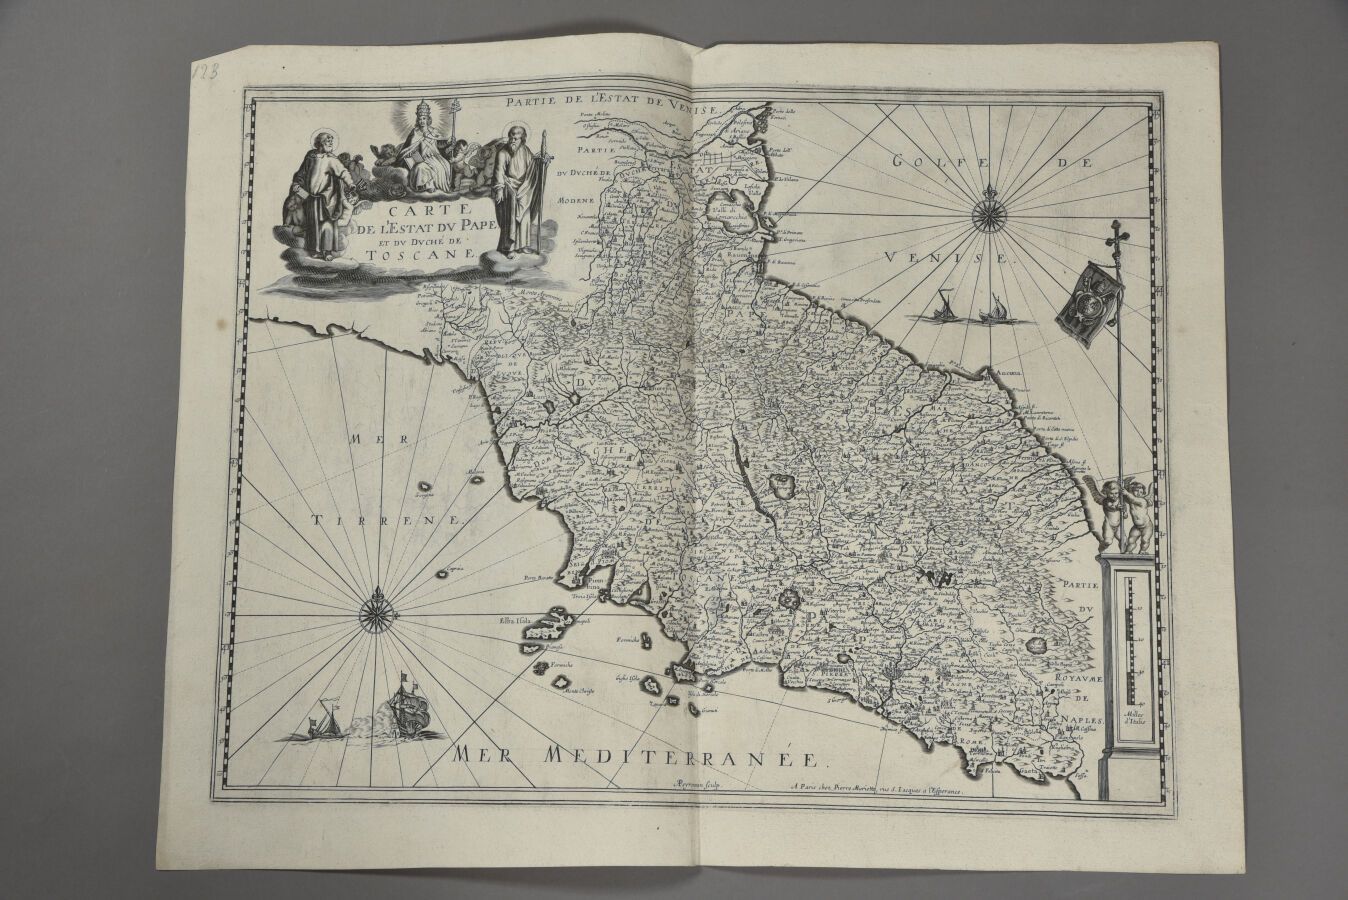 Null Cartógrafo del siglo XVII.
Mapa del estado del Papa, publicado por Pierre M&hellip;